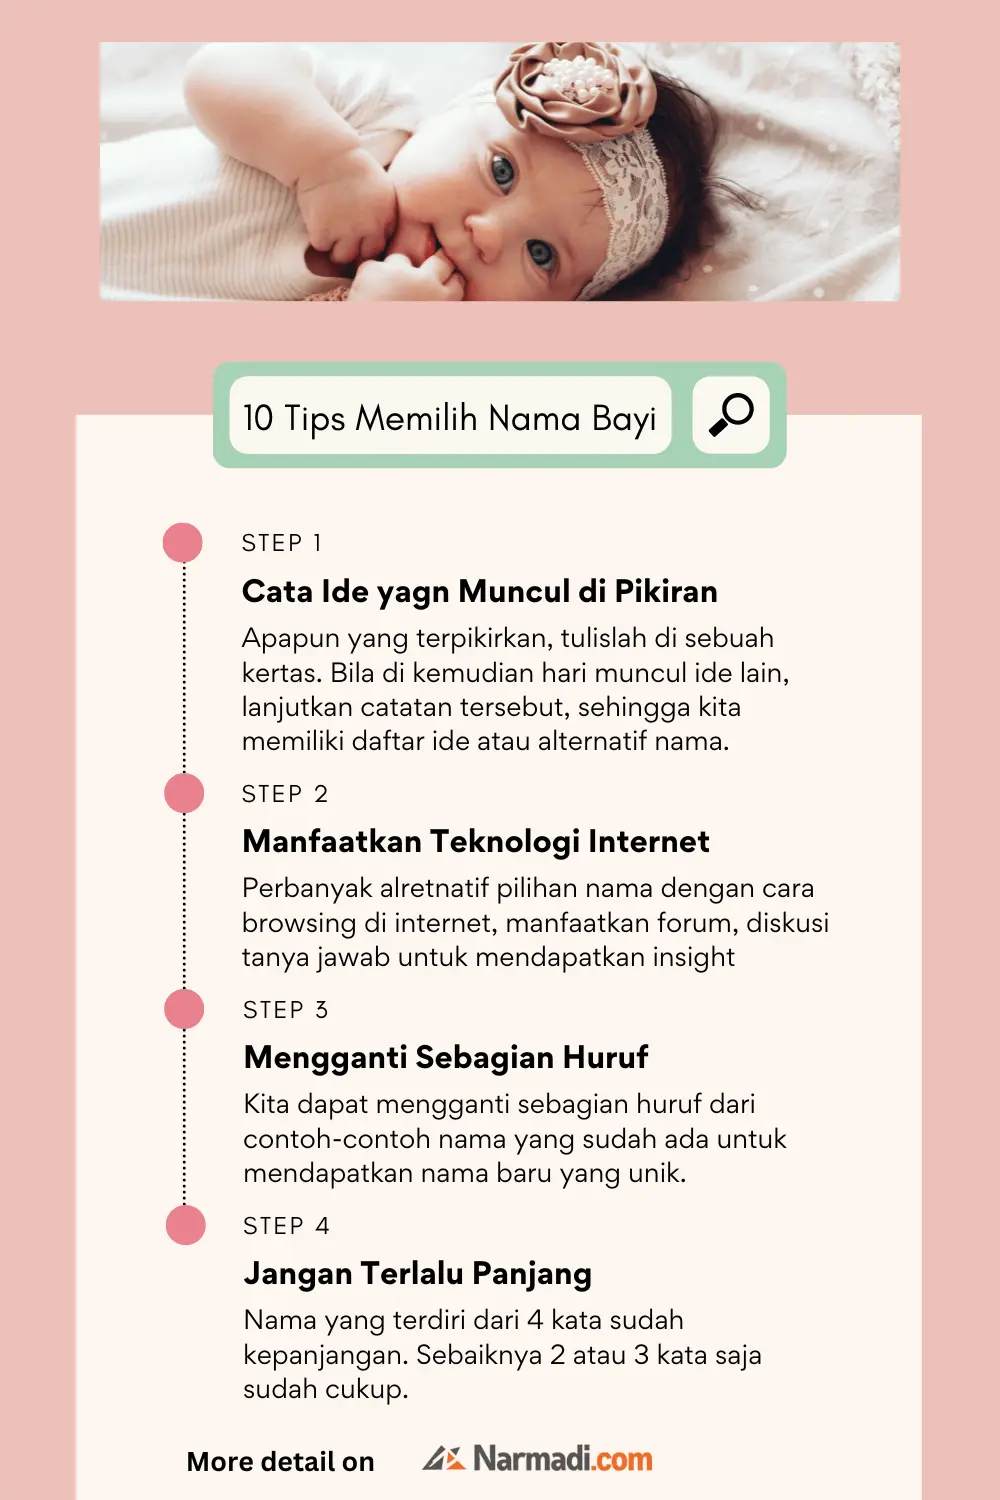 10 Tips Memilih Nama Bayi Terbaik